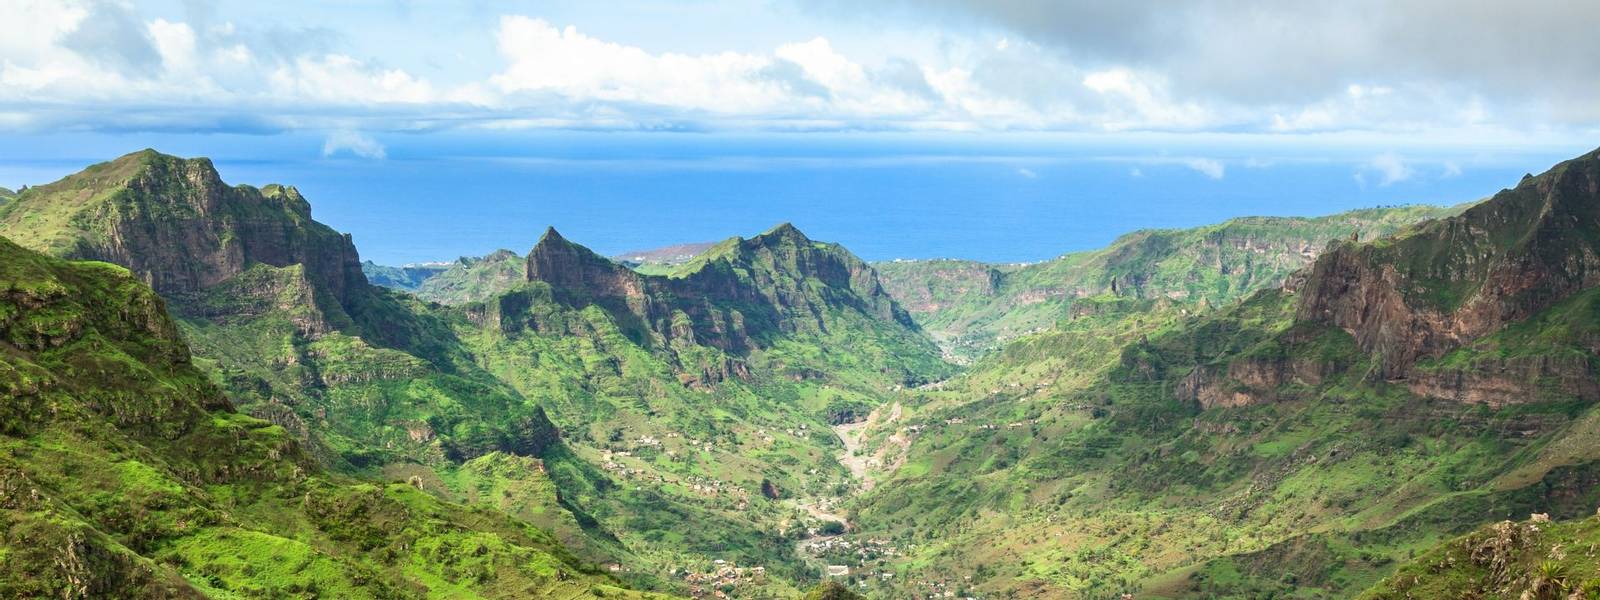 Serra Malagueta mountains in Santiago Island Cape Verde - Cabo Verde